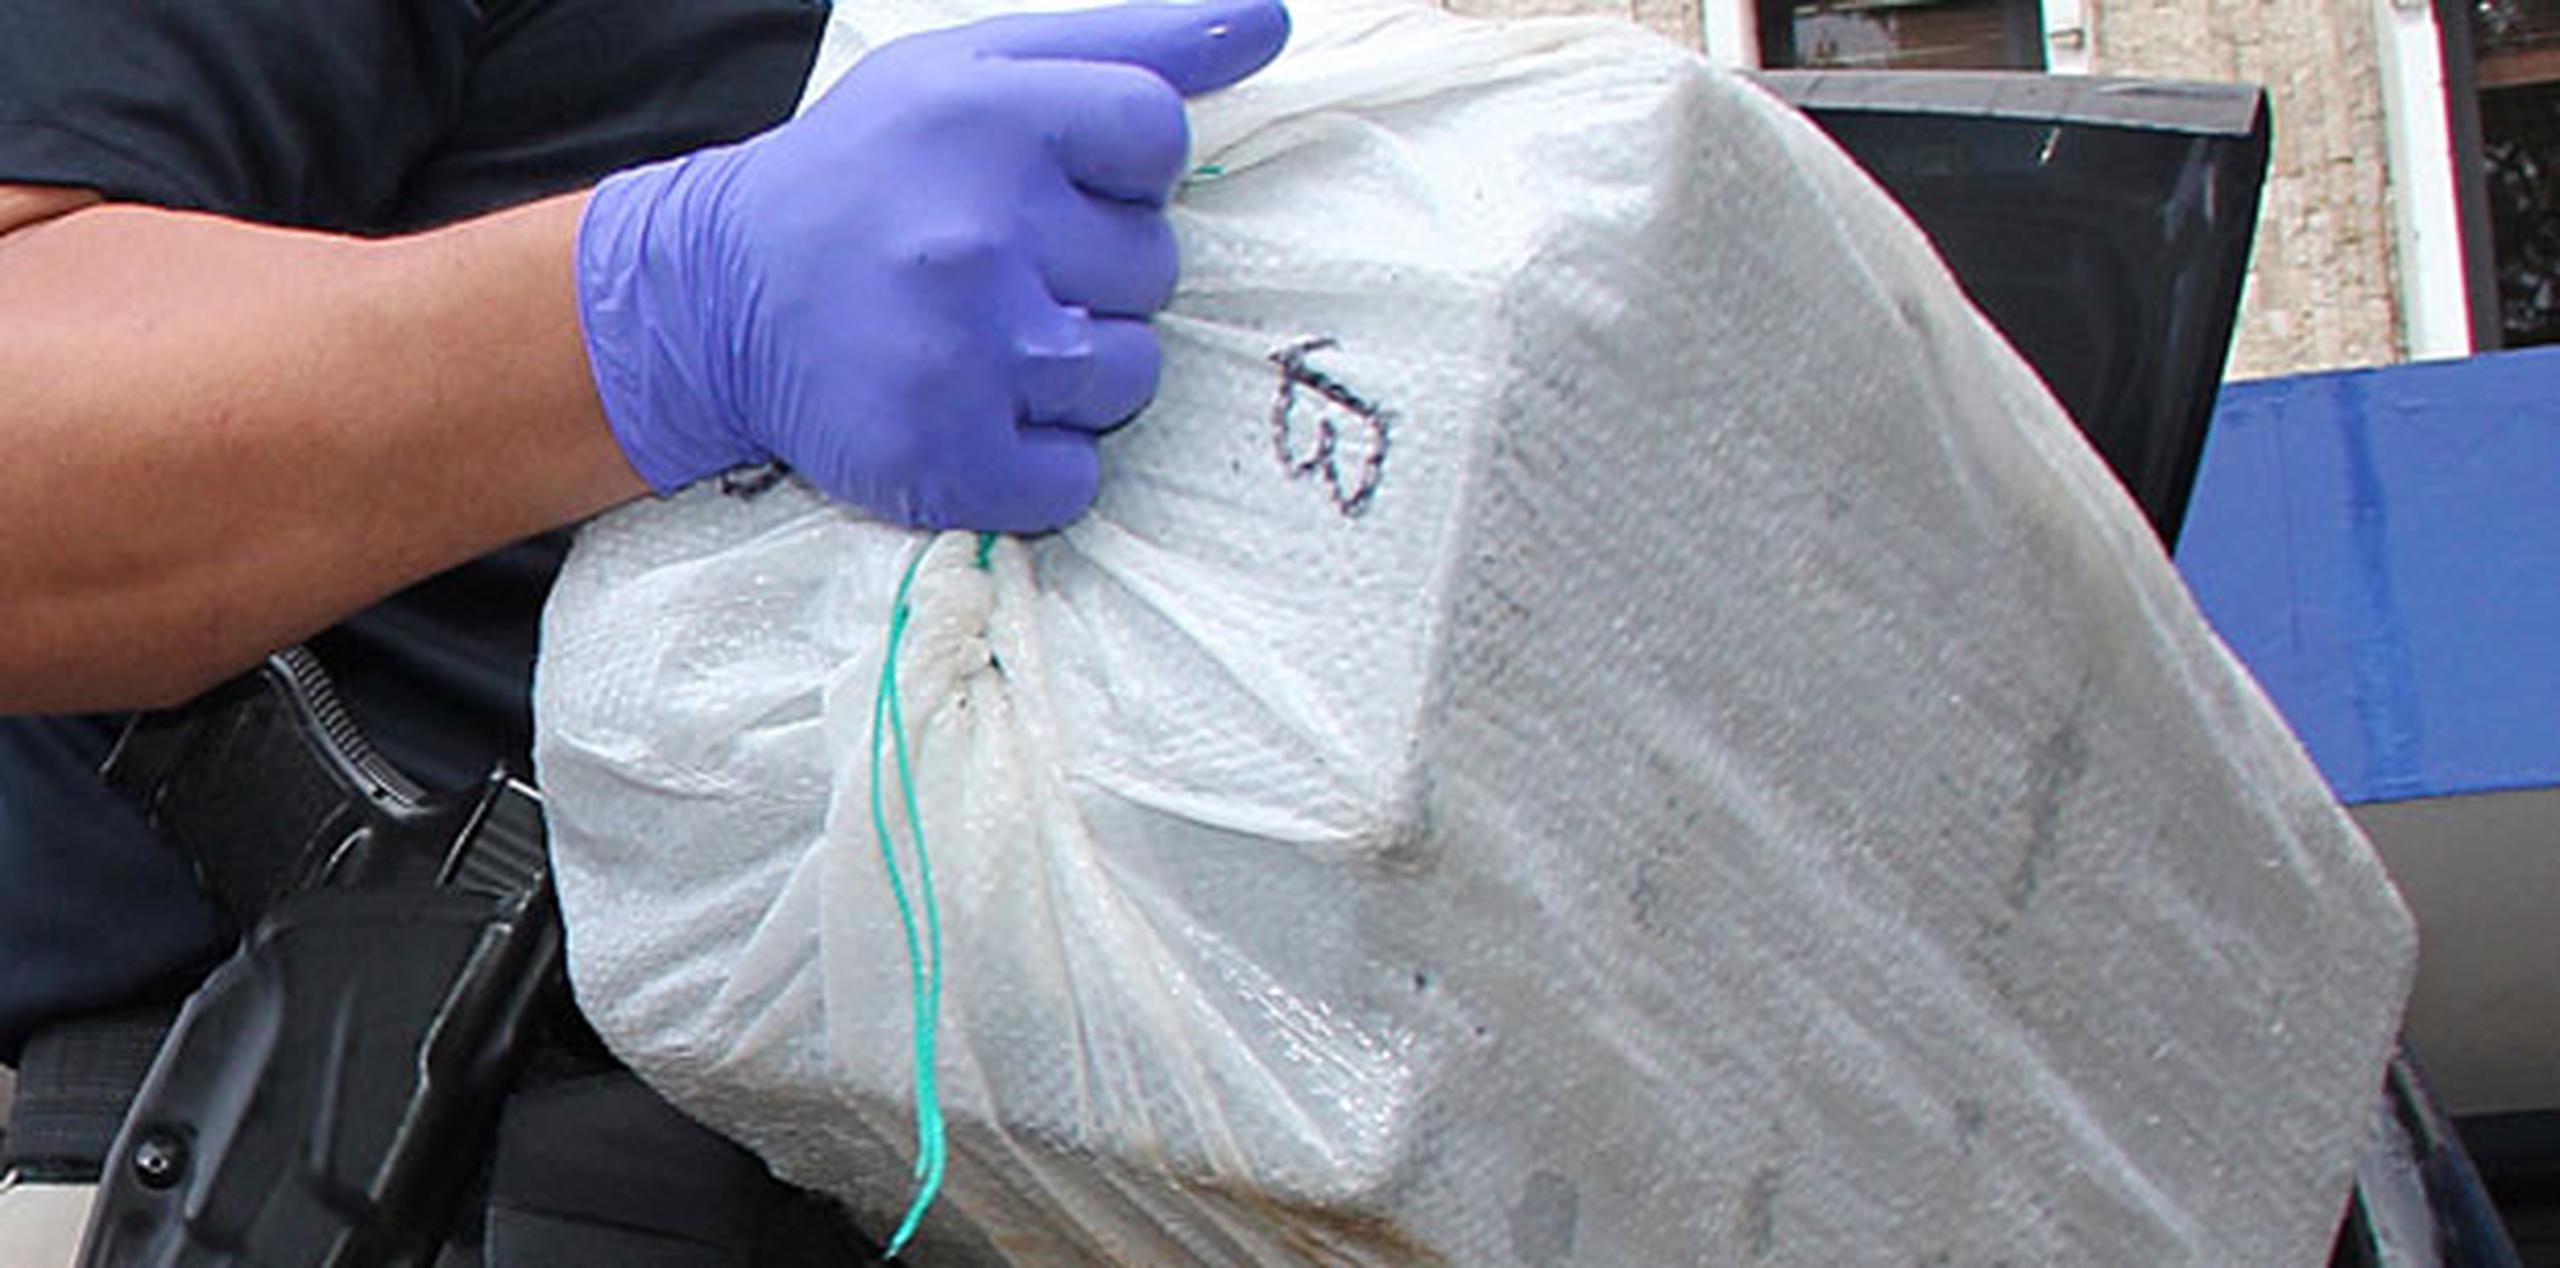 La cocaína estaba en cuatro maletas dentro de la embarcación. (Archivo)